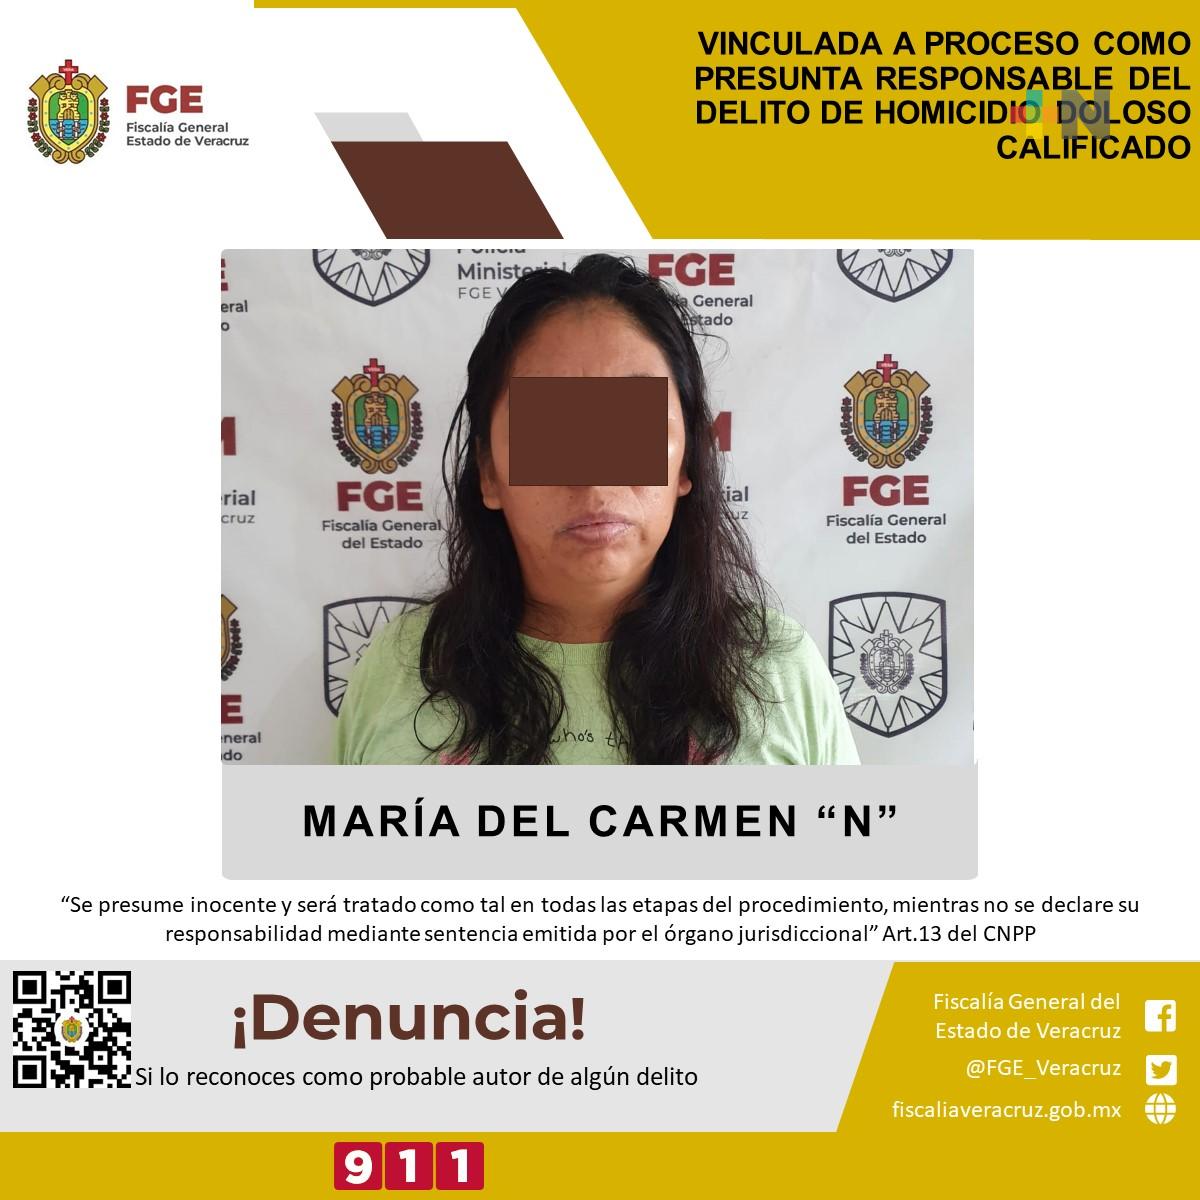 María del Carmen «N» fue vinculada a proceso por homicidio doloso calificado